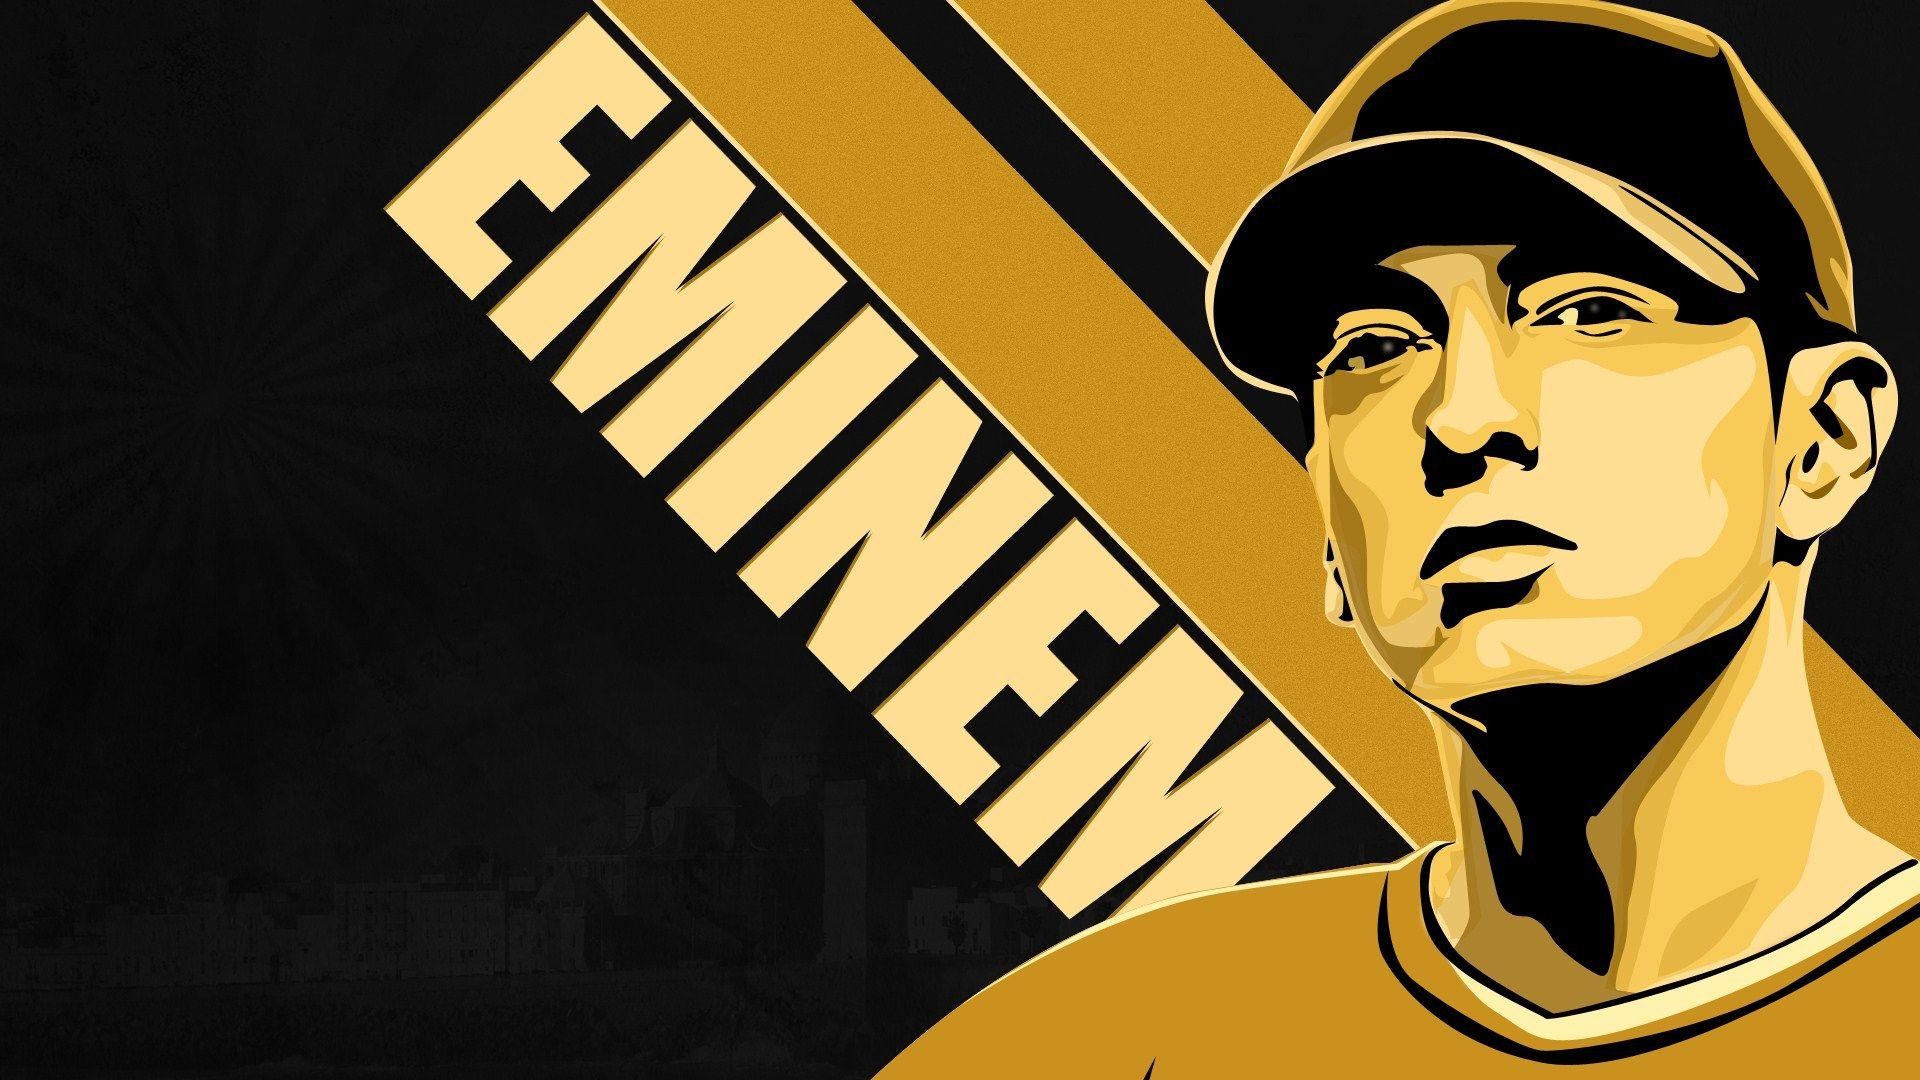 1920x1080 Eminem Wallpapers HD 2015 - Wallpaper Cave